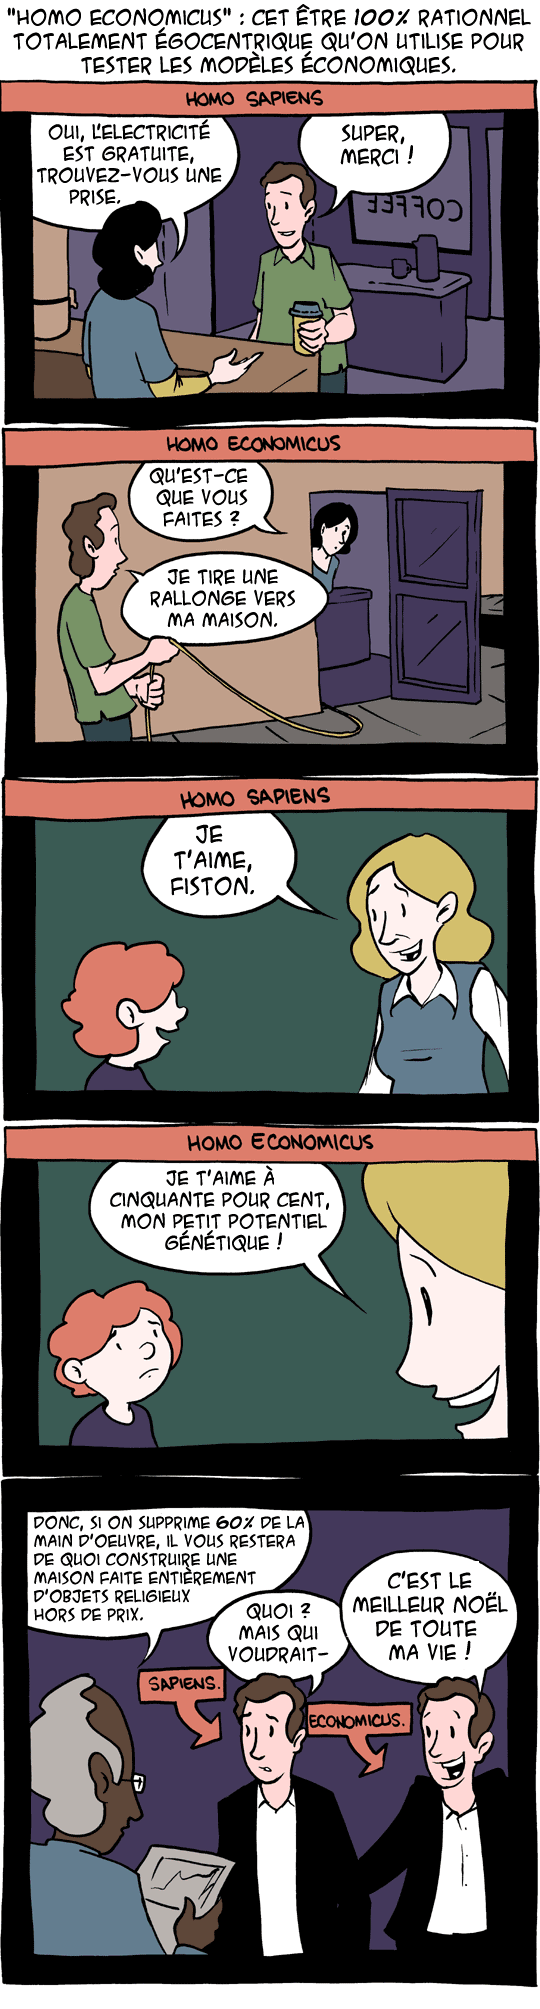 homo economicus vs homo sapiens